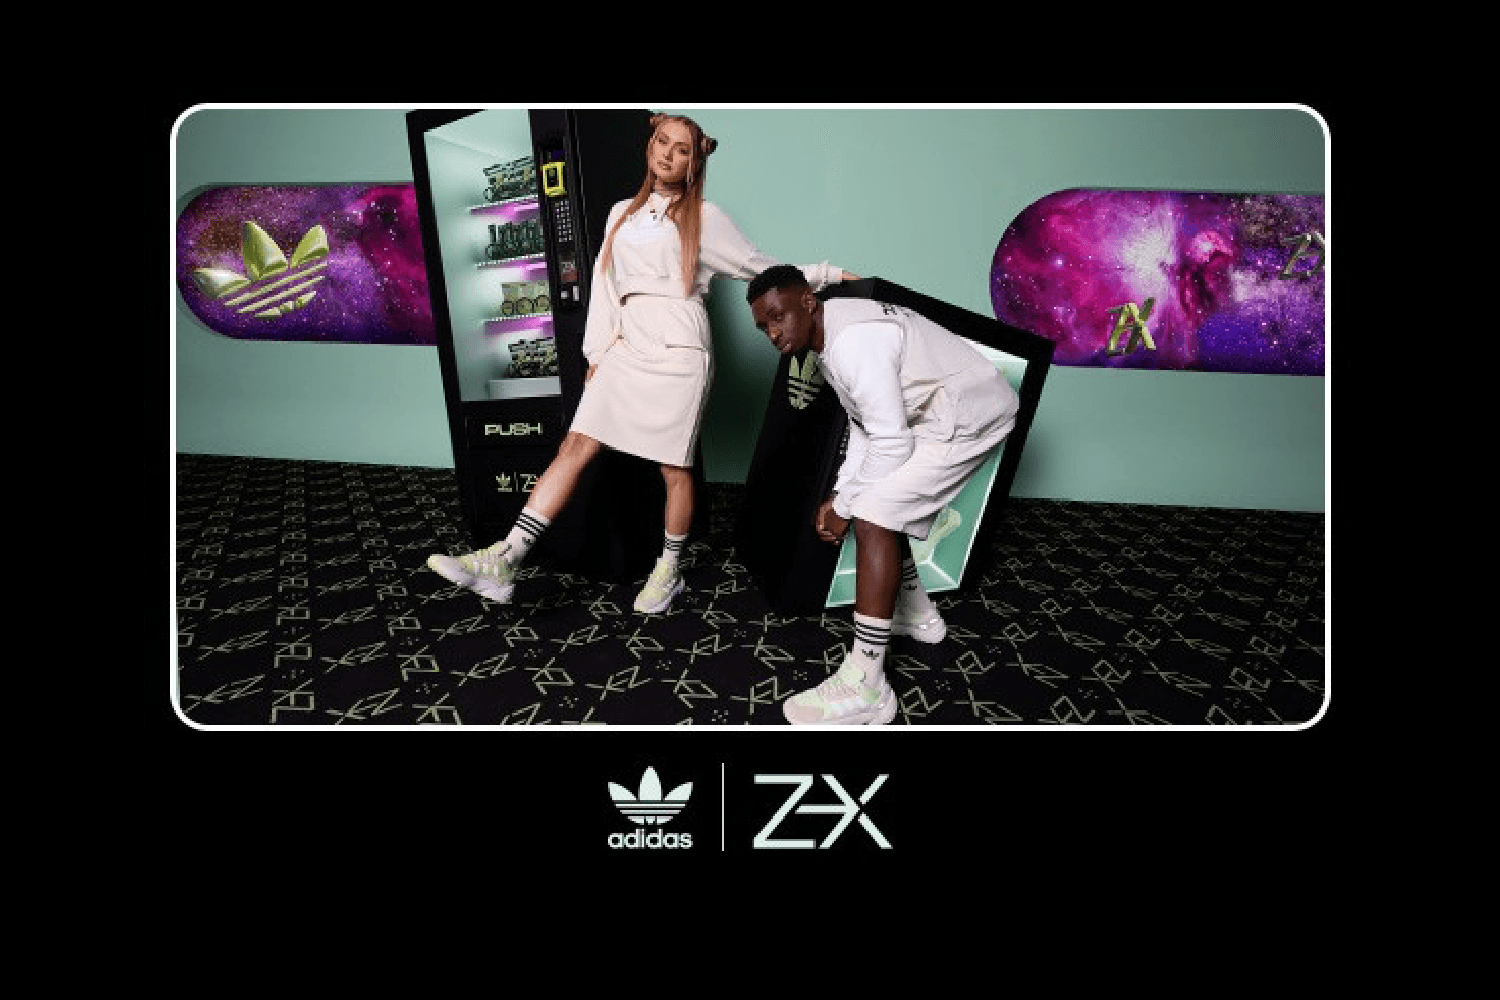 Starte in die 'NZXT Destination' mit dem neuen adidas ZX 22